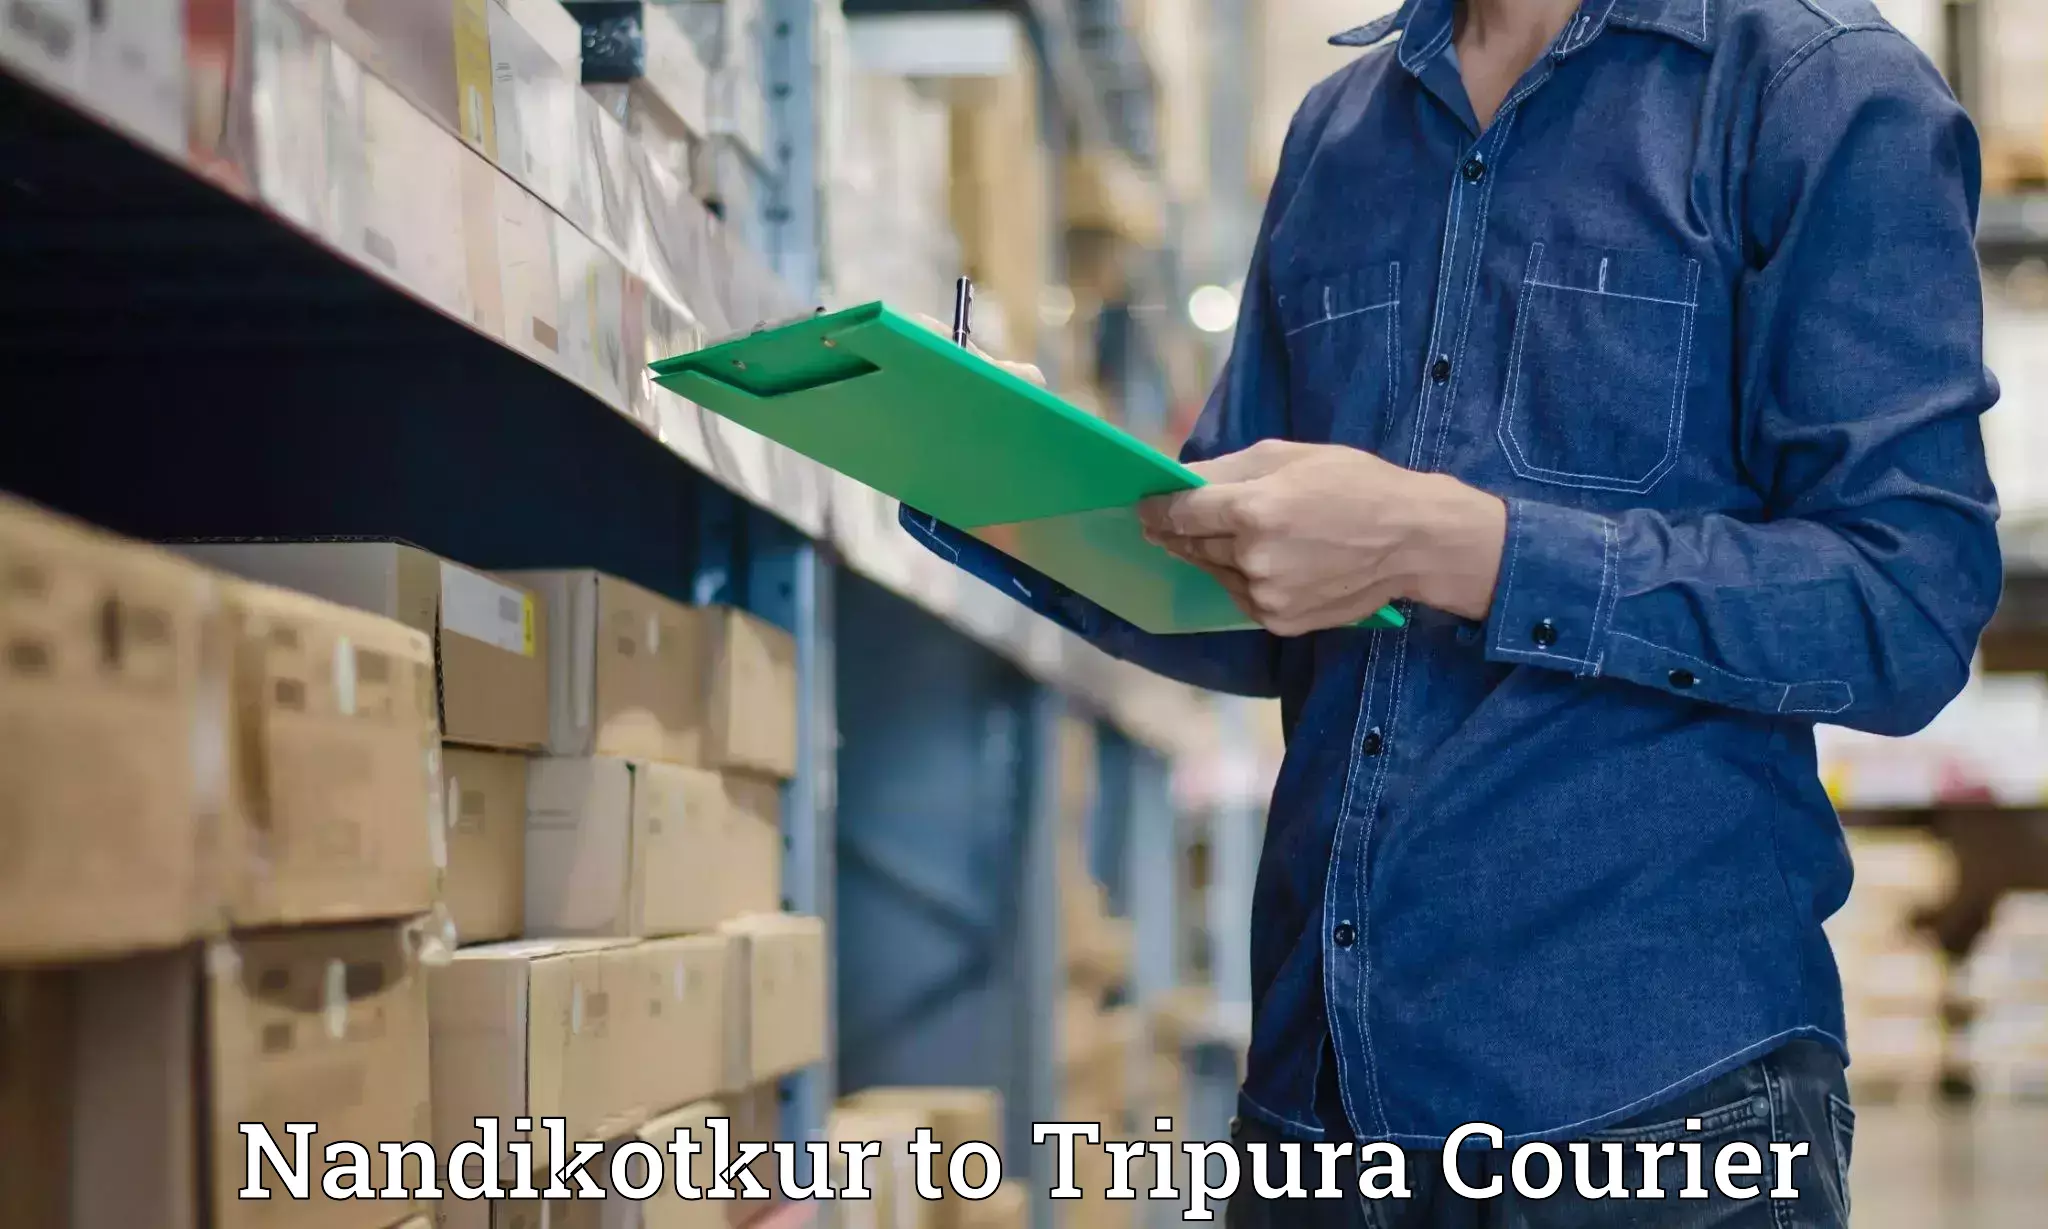 Business shipping needs Nandikotkur to West Tripura